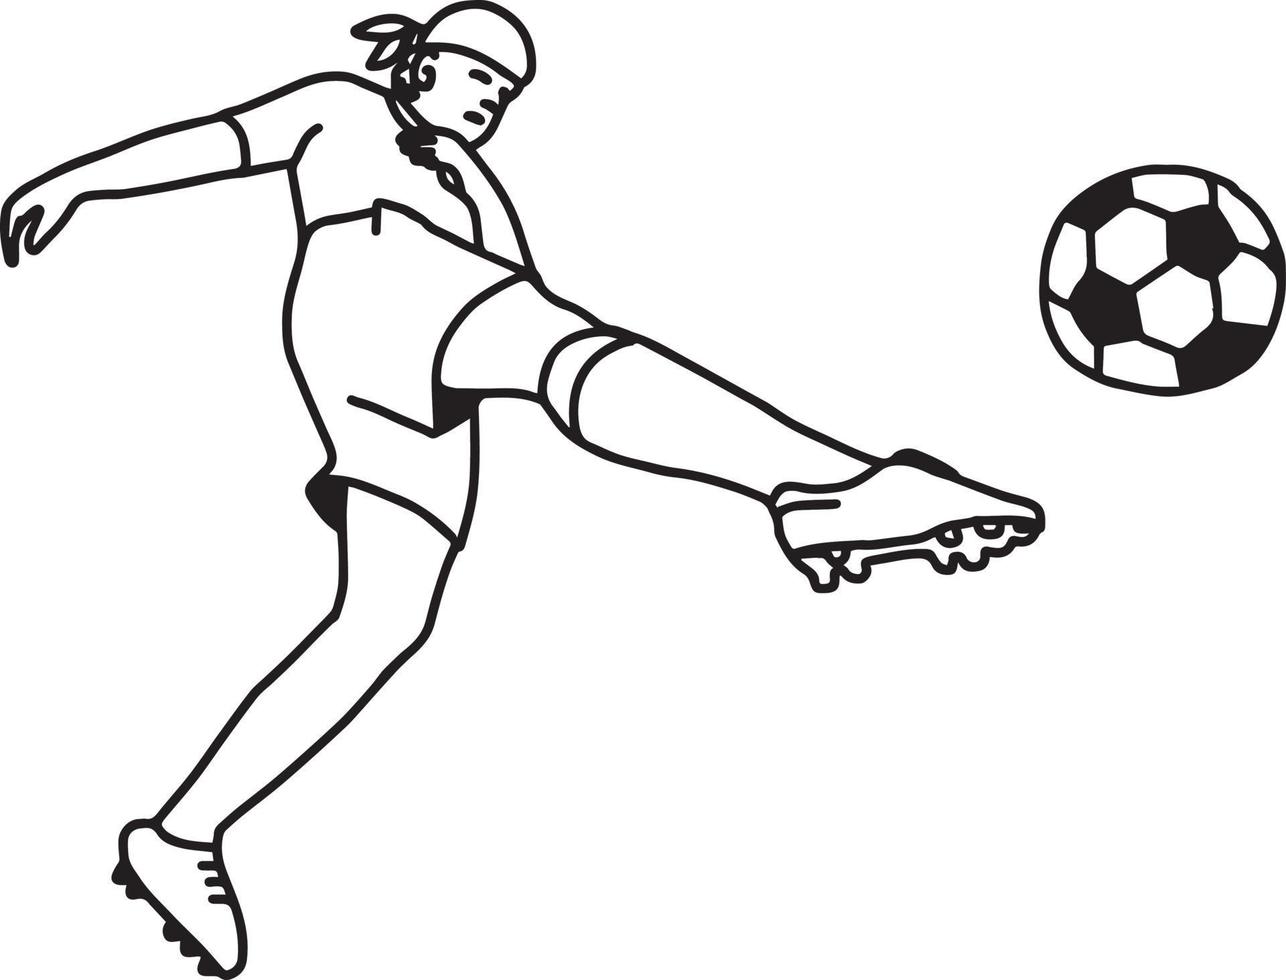 Joueur de football football en action - croquis d'illustration vectorielle vecteur